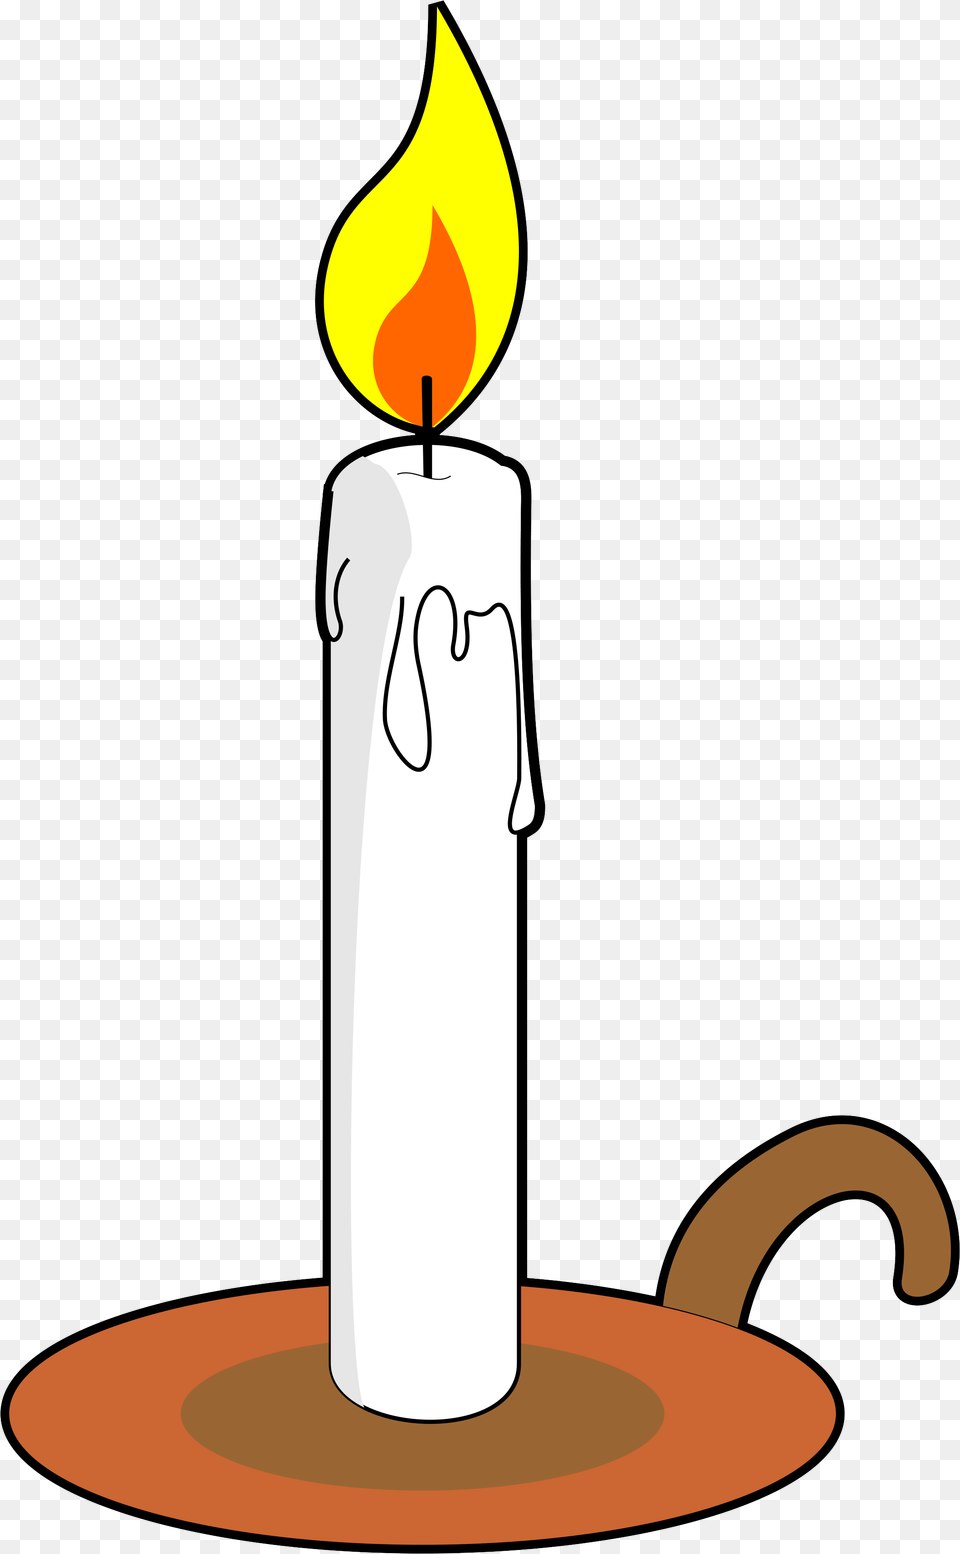 Alphabet Clip Art Letter C Set Class Decoration, Candle, Fire, Flame Free Png